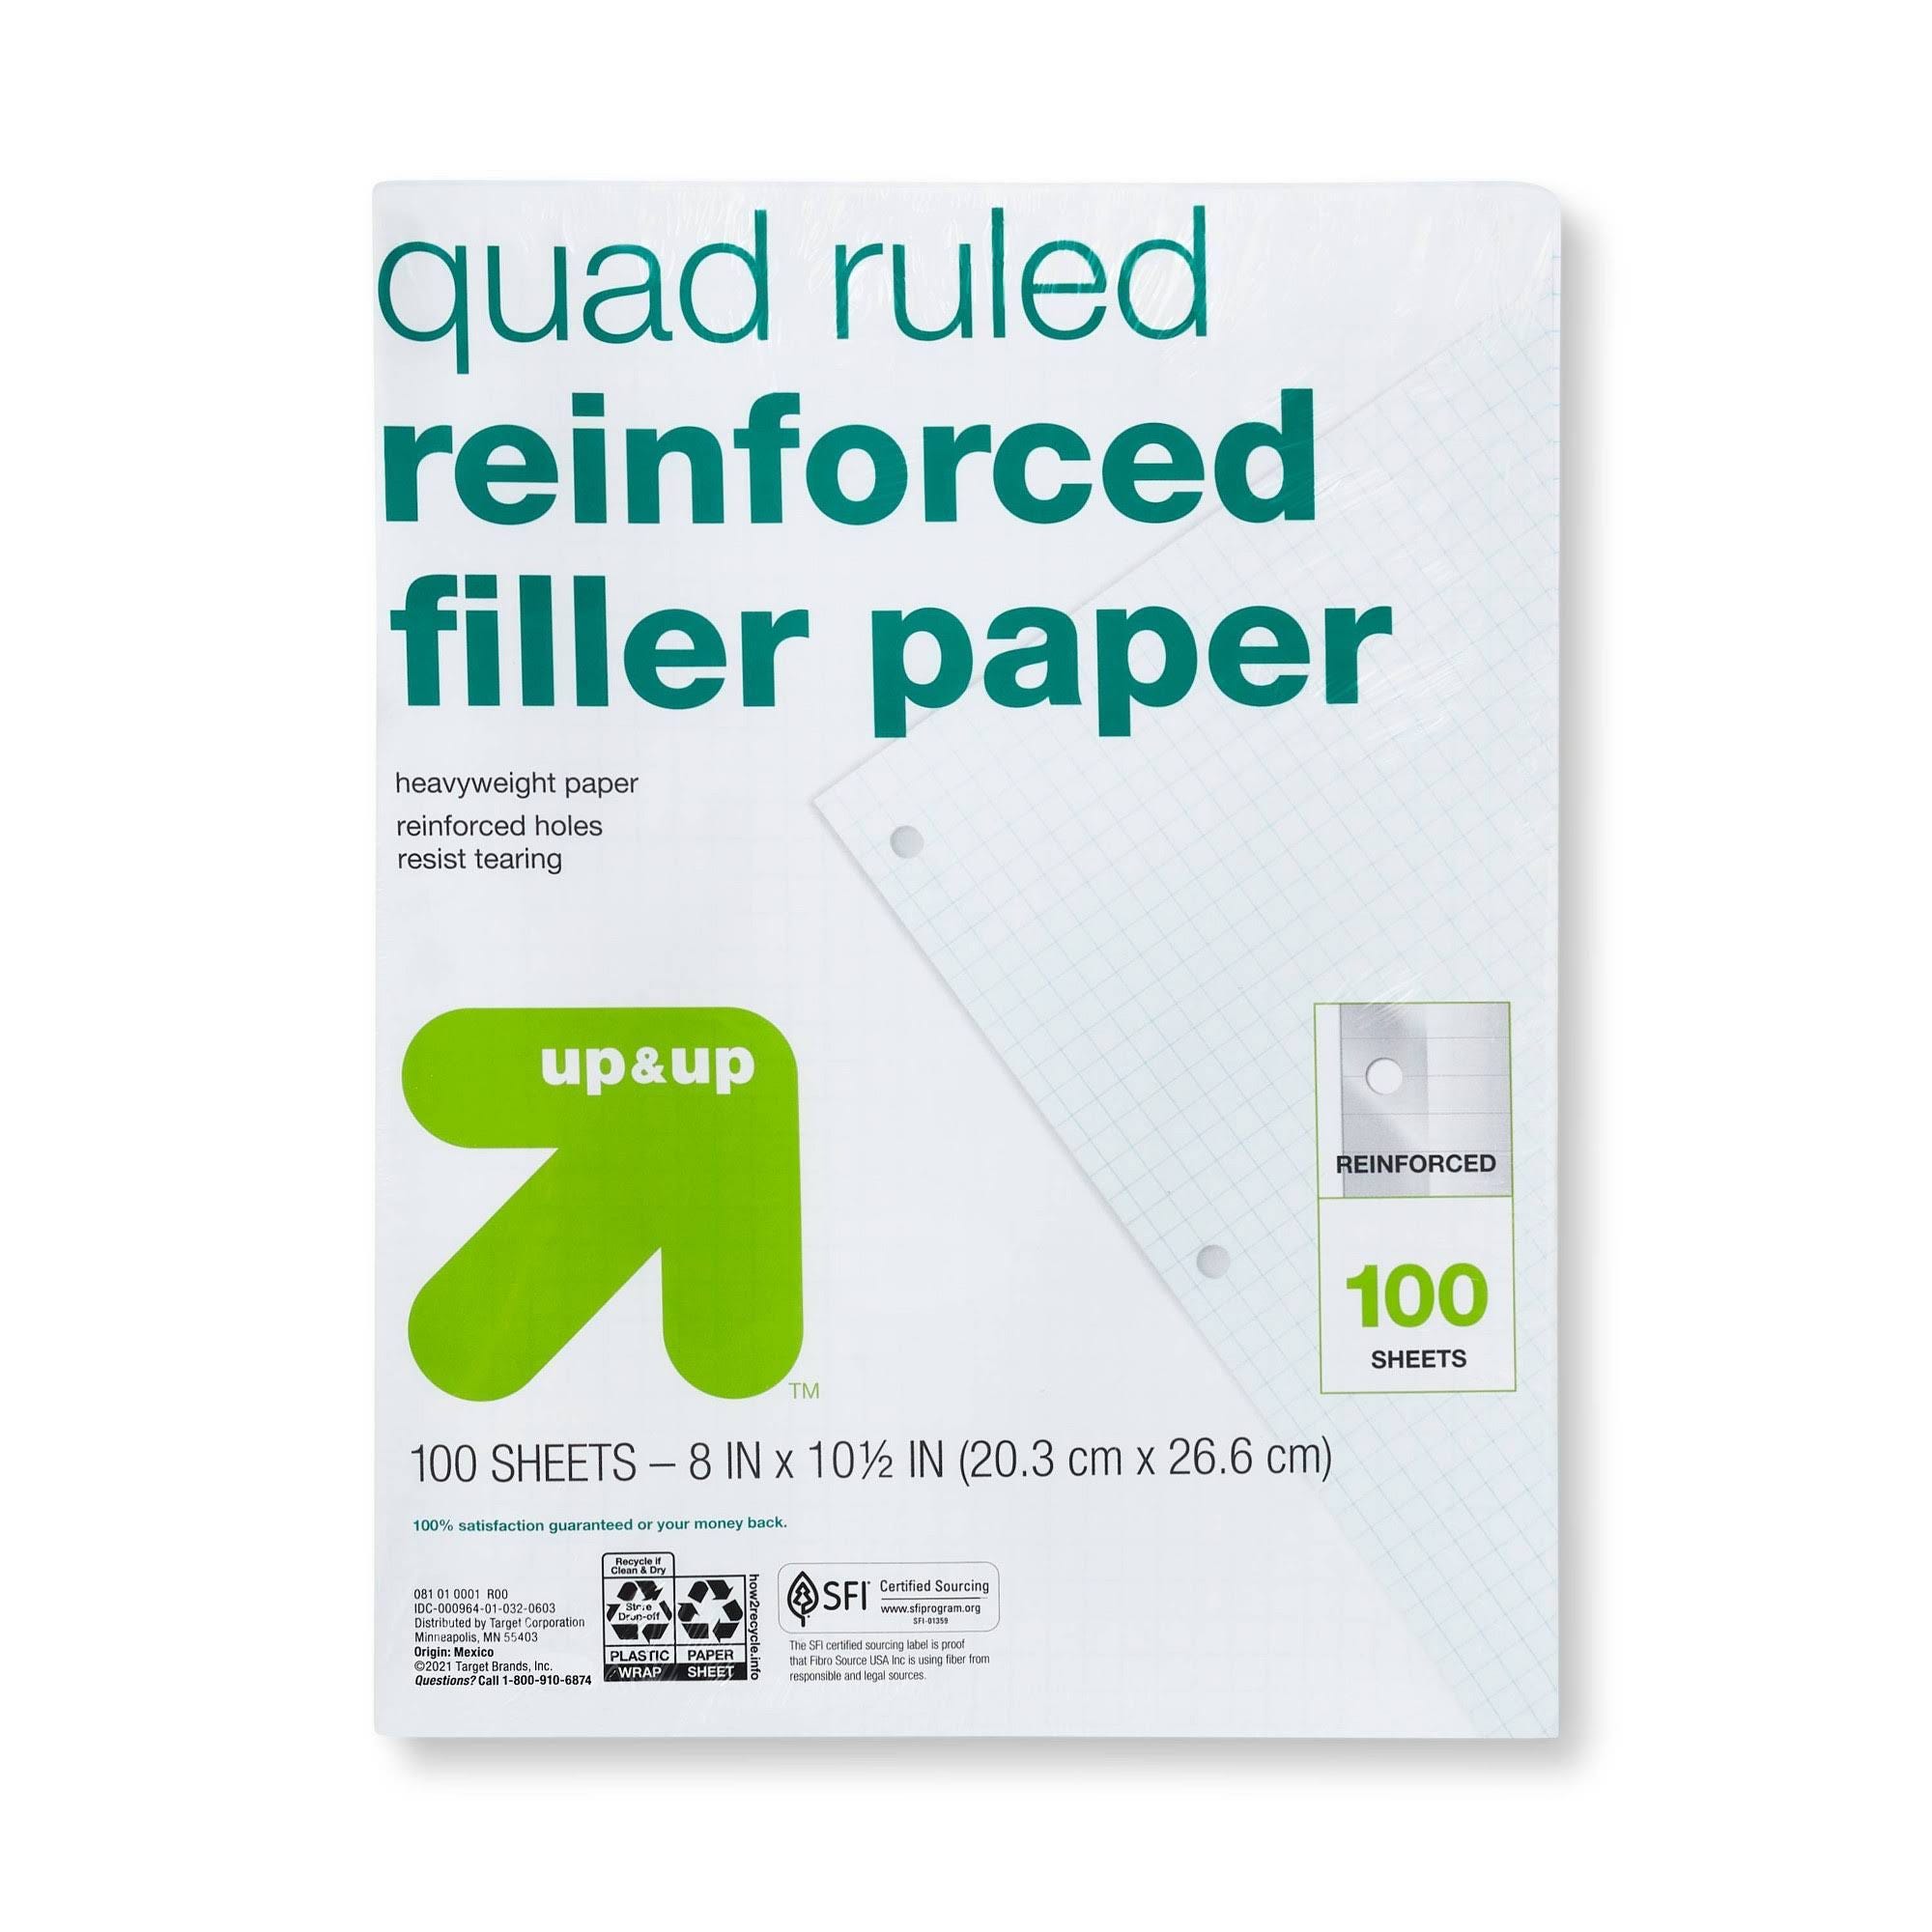 Up & Up Filler Paper Reinforced Quad Ruled Lined Notebook | Image